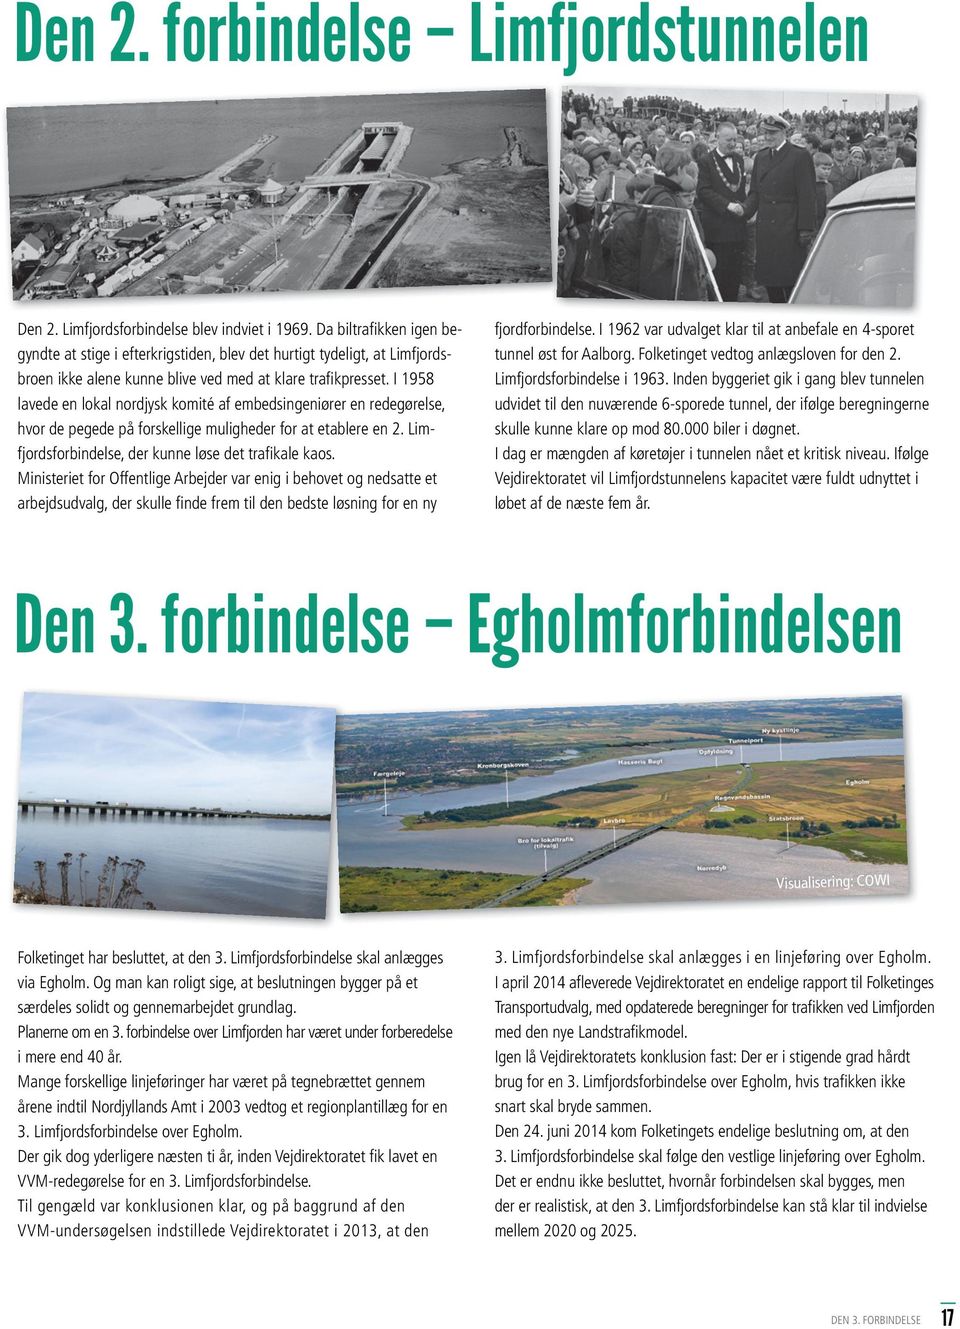 I 1958 lavede en lokal nordjysk komité af embedsingeniører en redegørelse, hvor de pegede på forskellige muligheder for at etablere en 2. Limfjordsforbindelse, der kunne løse det trafi kale kaos.